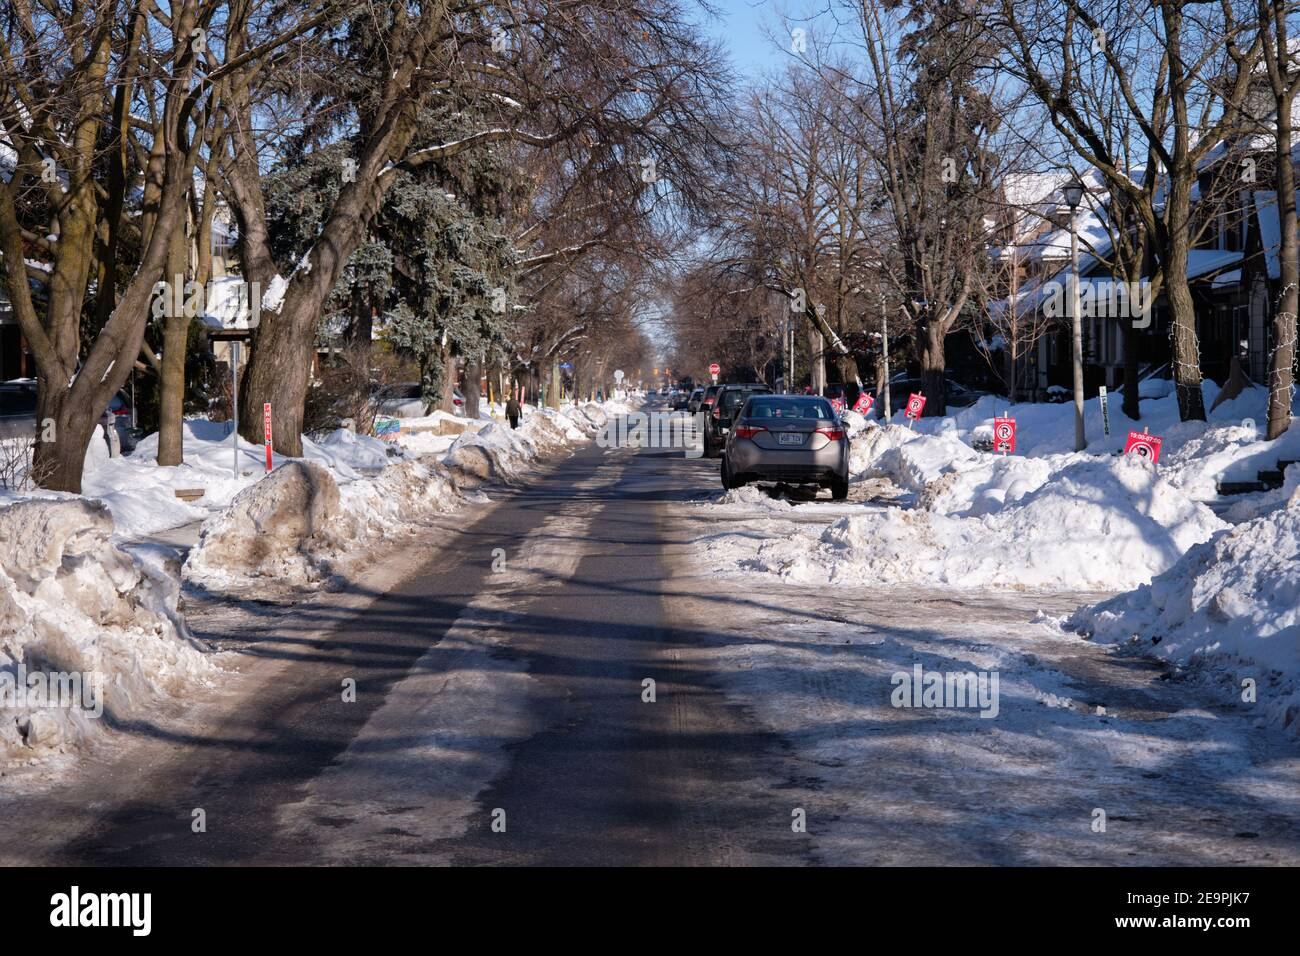 Rue de la ville d'Ottawa avec des voitures garées au milieu de la route à cause des bancs de neige, ne laissant qu'une seule voie Banque D'Images